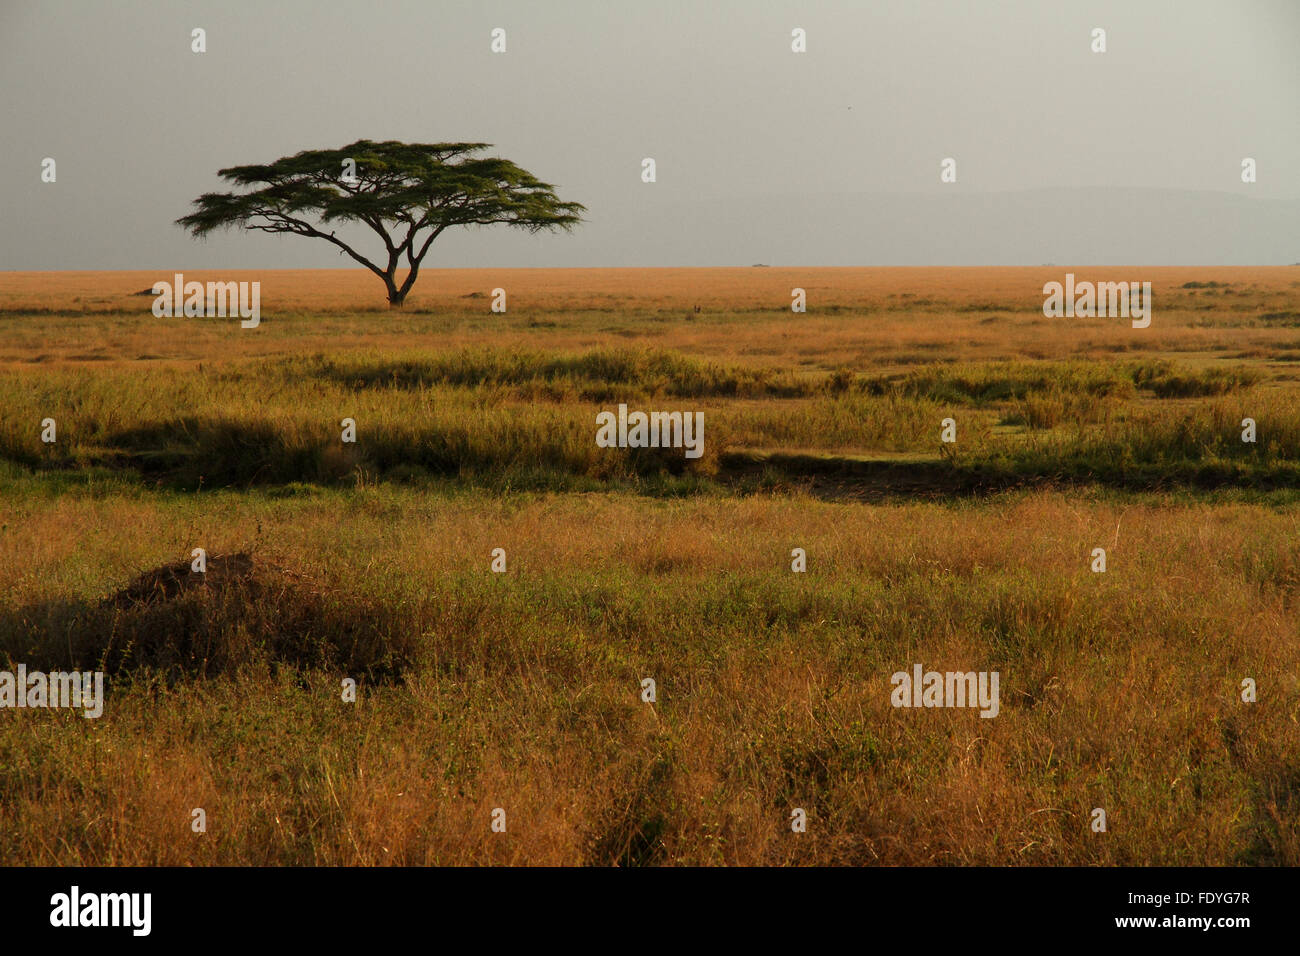 Eine einsame Akazie sitzen in den bunten Gräsern der afrikanischen Savanne Stockfoto